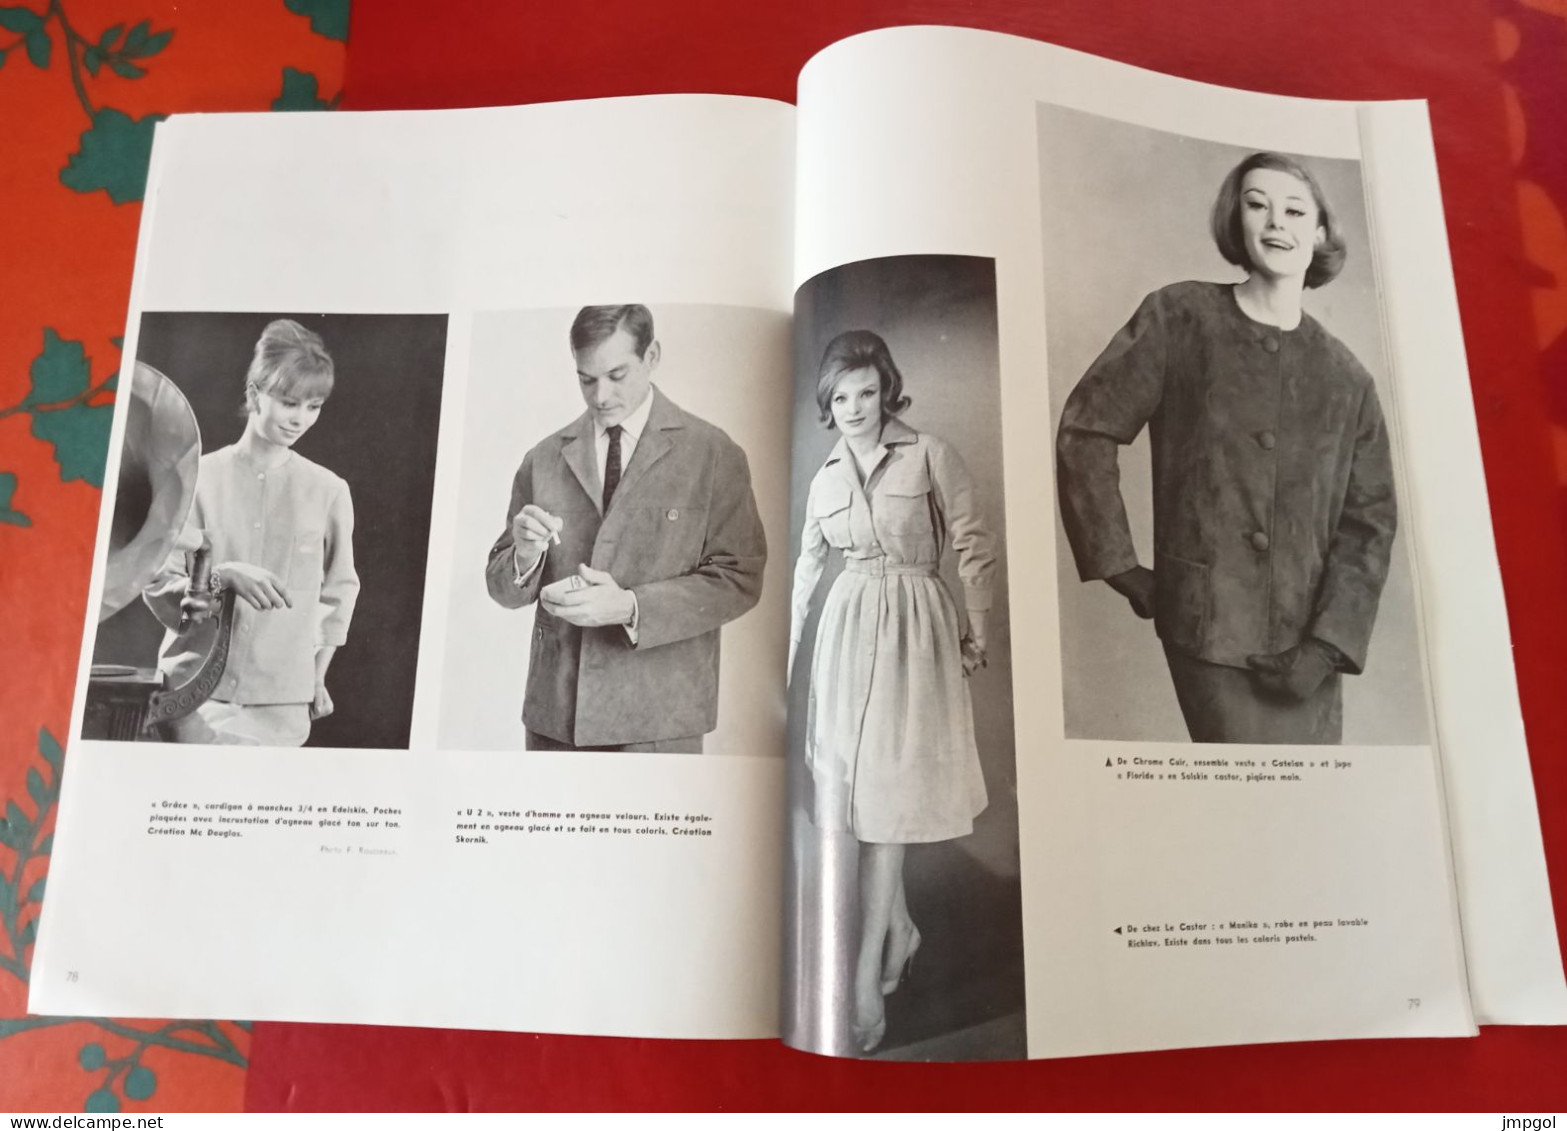 Prêt à Porter n°22 Mai 1961 Minou Drouet Martine Carol Tendance Mode Hommes et Femmes Tailleurs Robes Manteaux